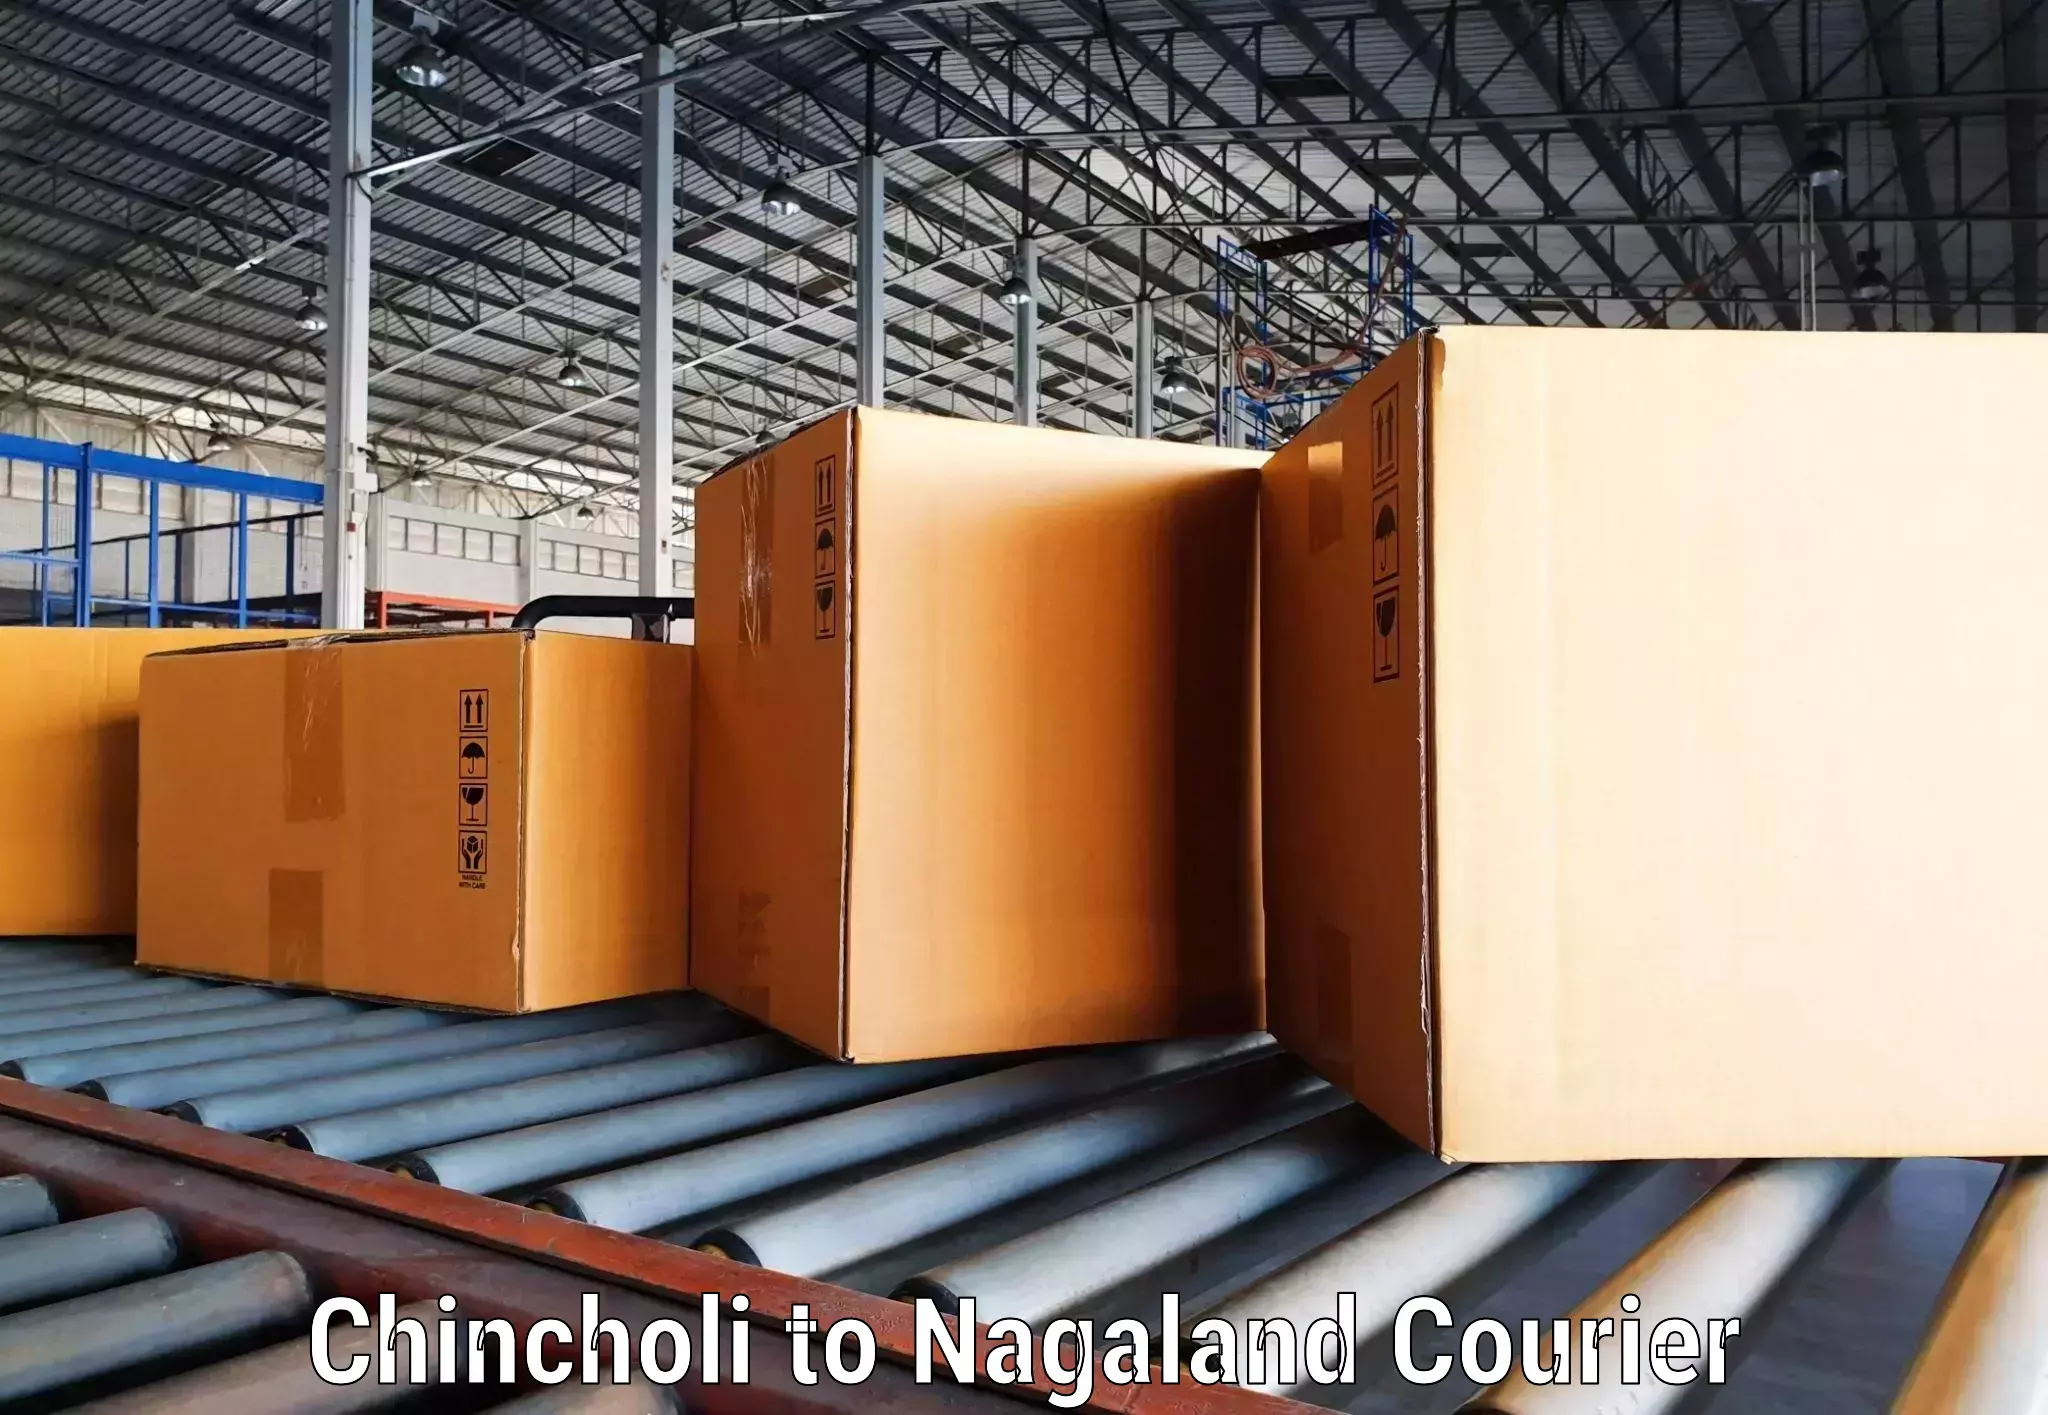 Global shipping networks Chincholi to Nagaland